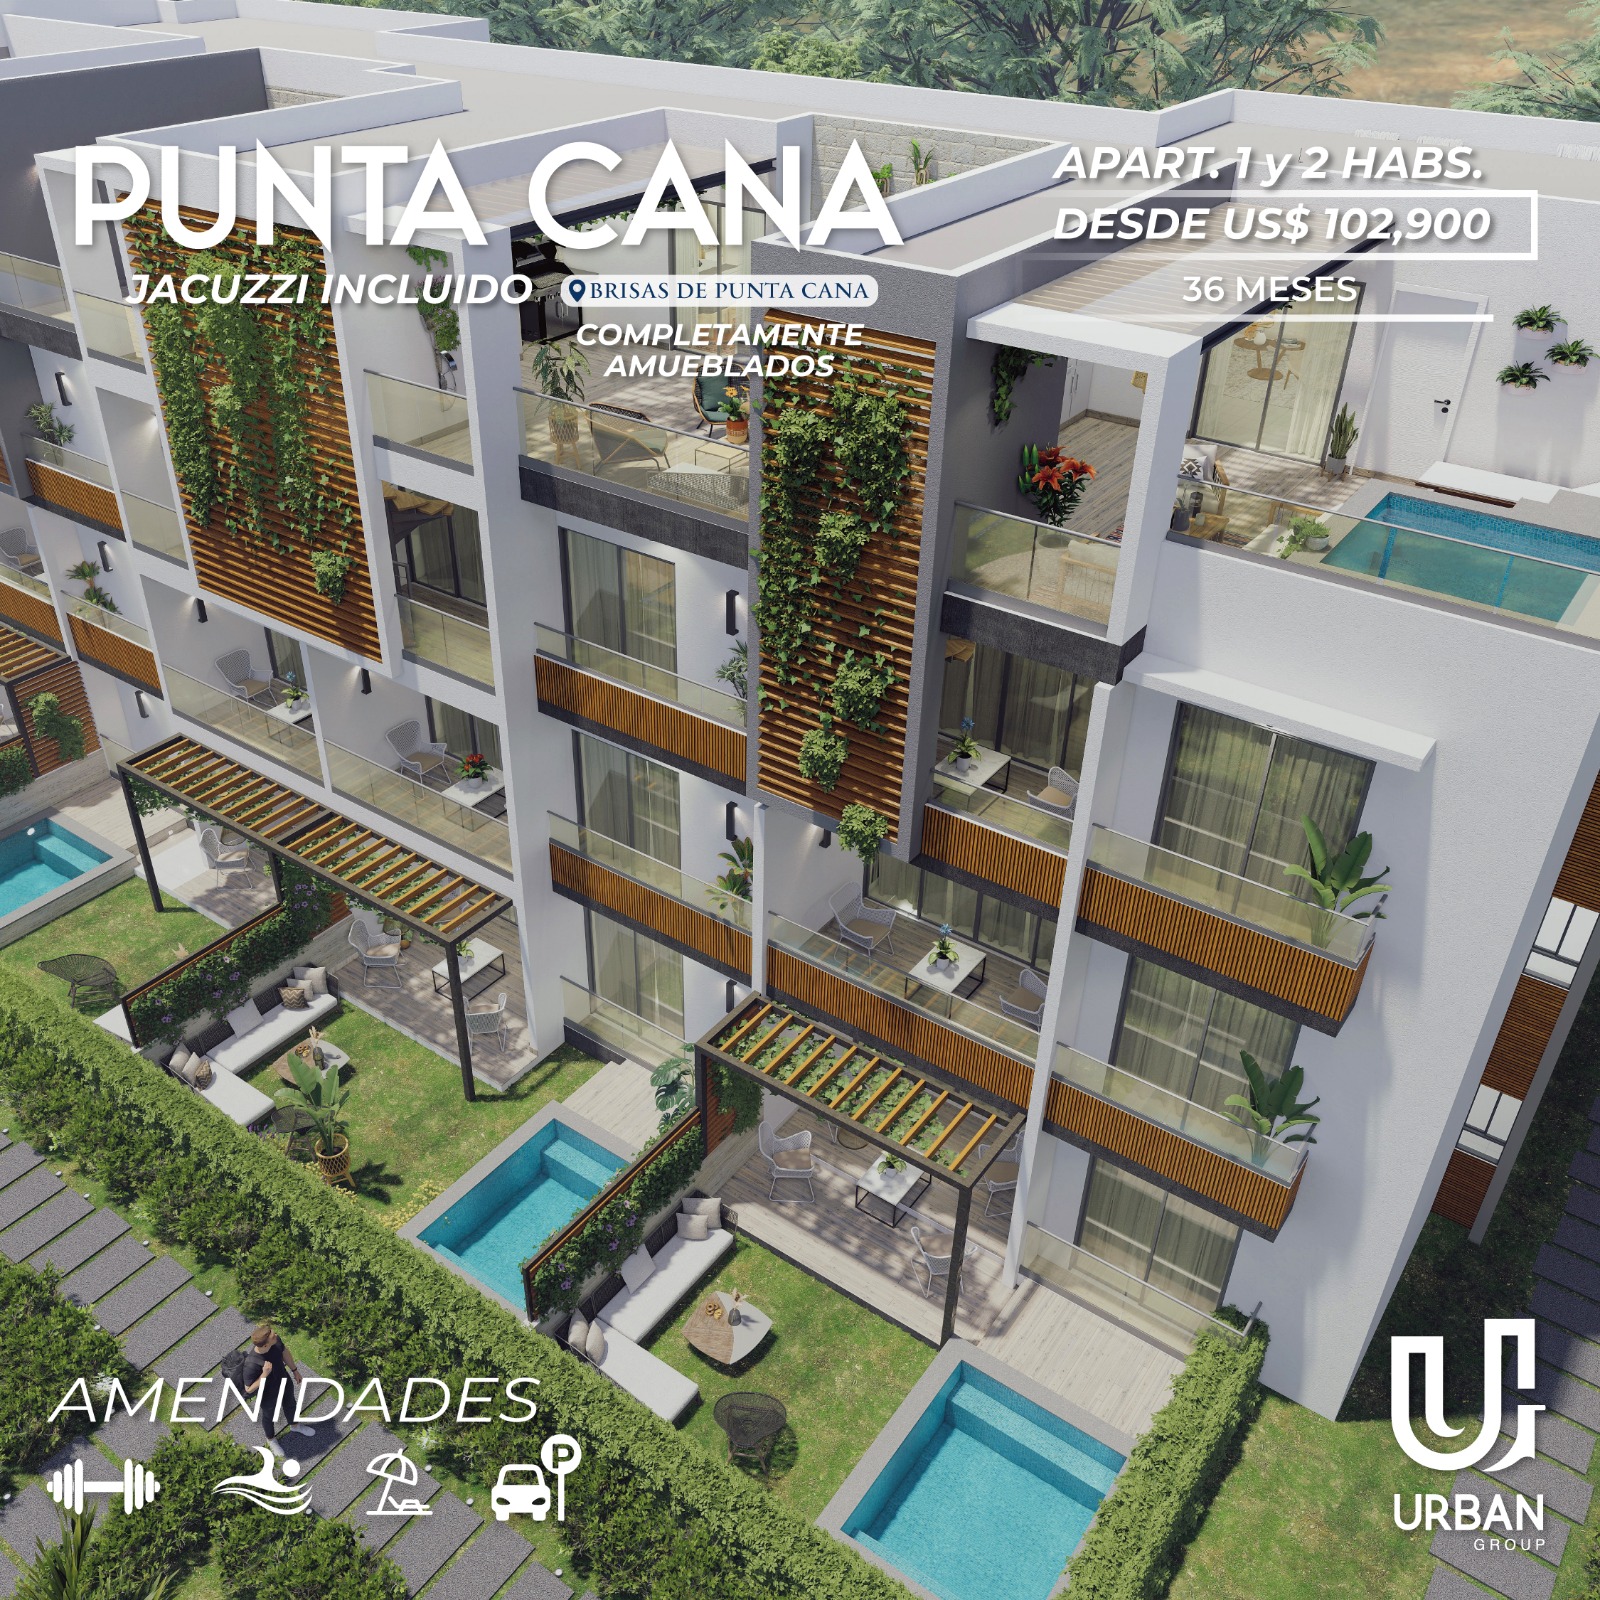 Apartamentos Amueblados Minutos de la Playa Punta Cana